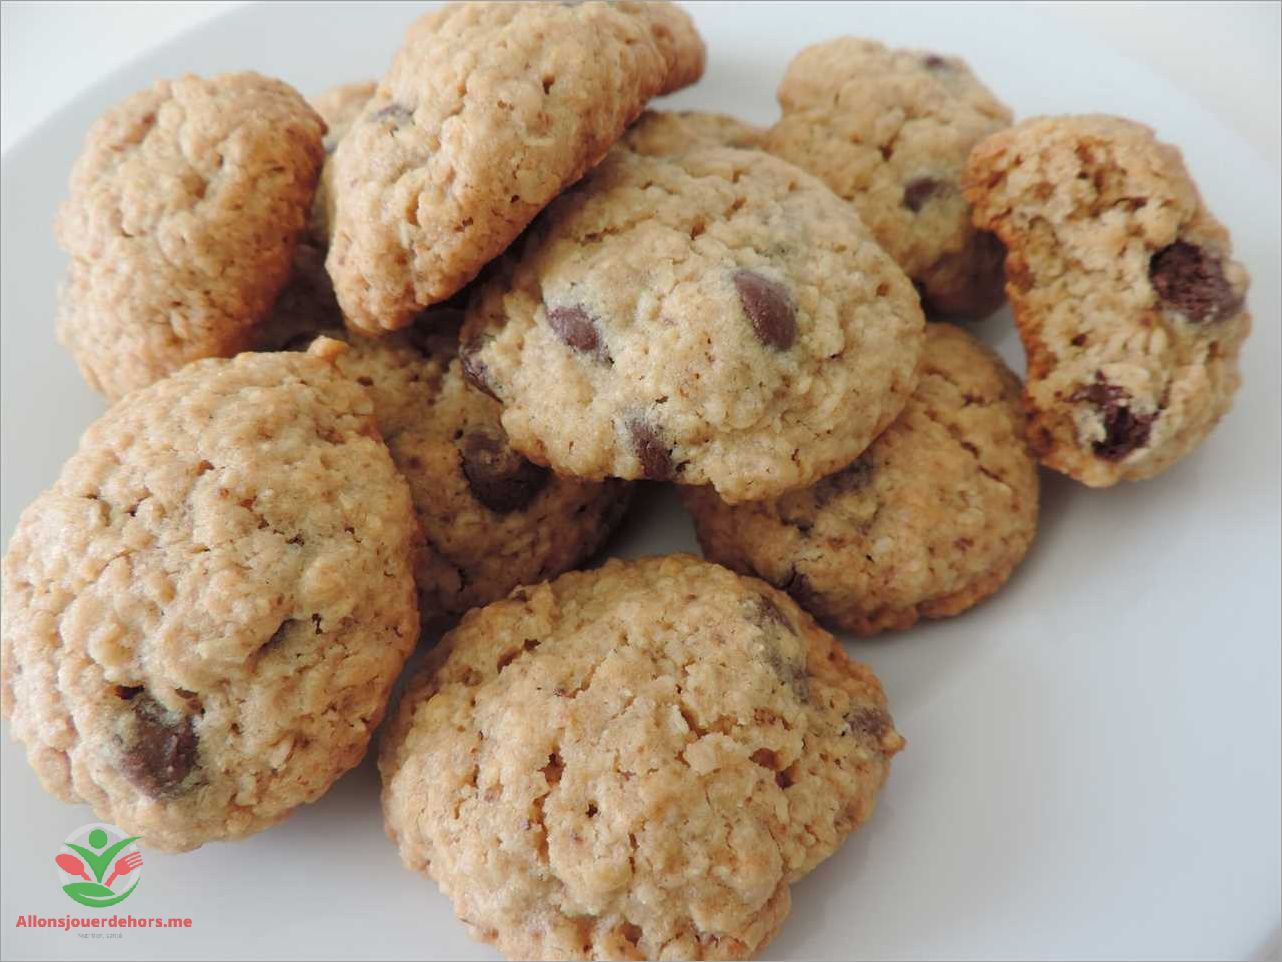 Instructions pour préparer les biscuits flocon d'avoine